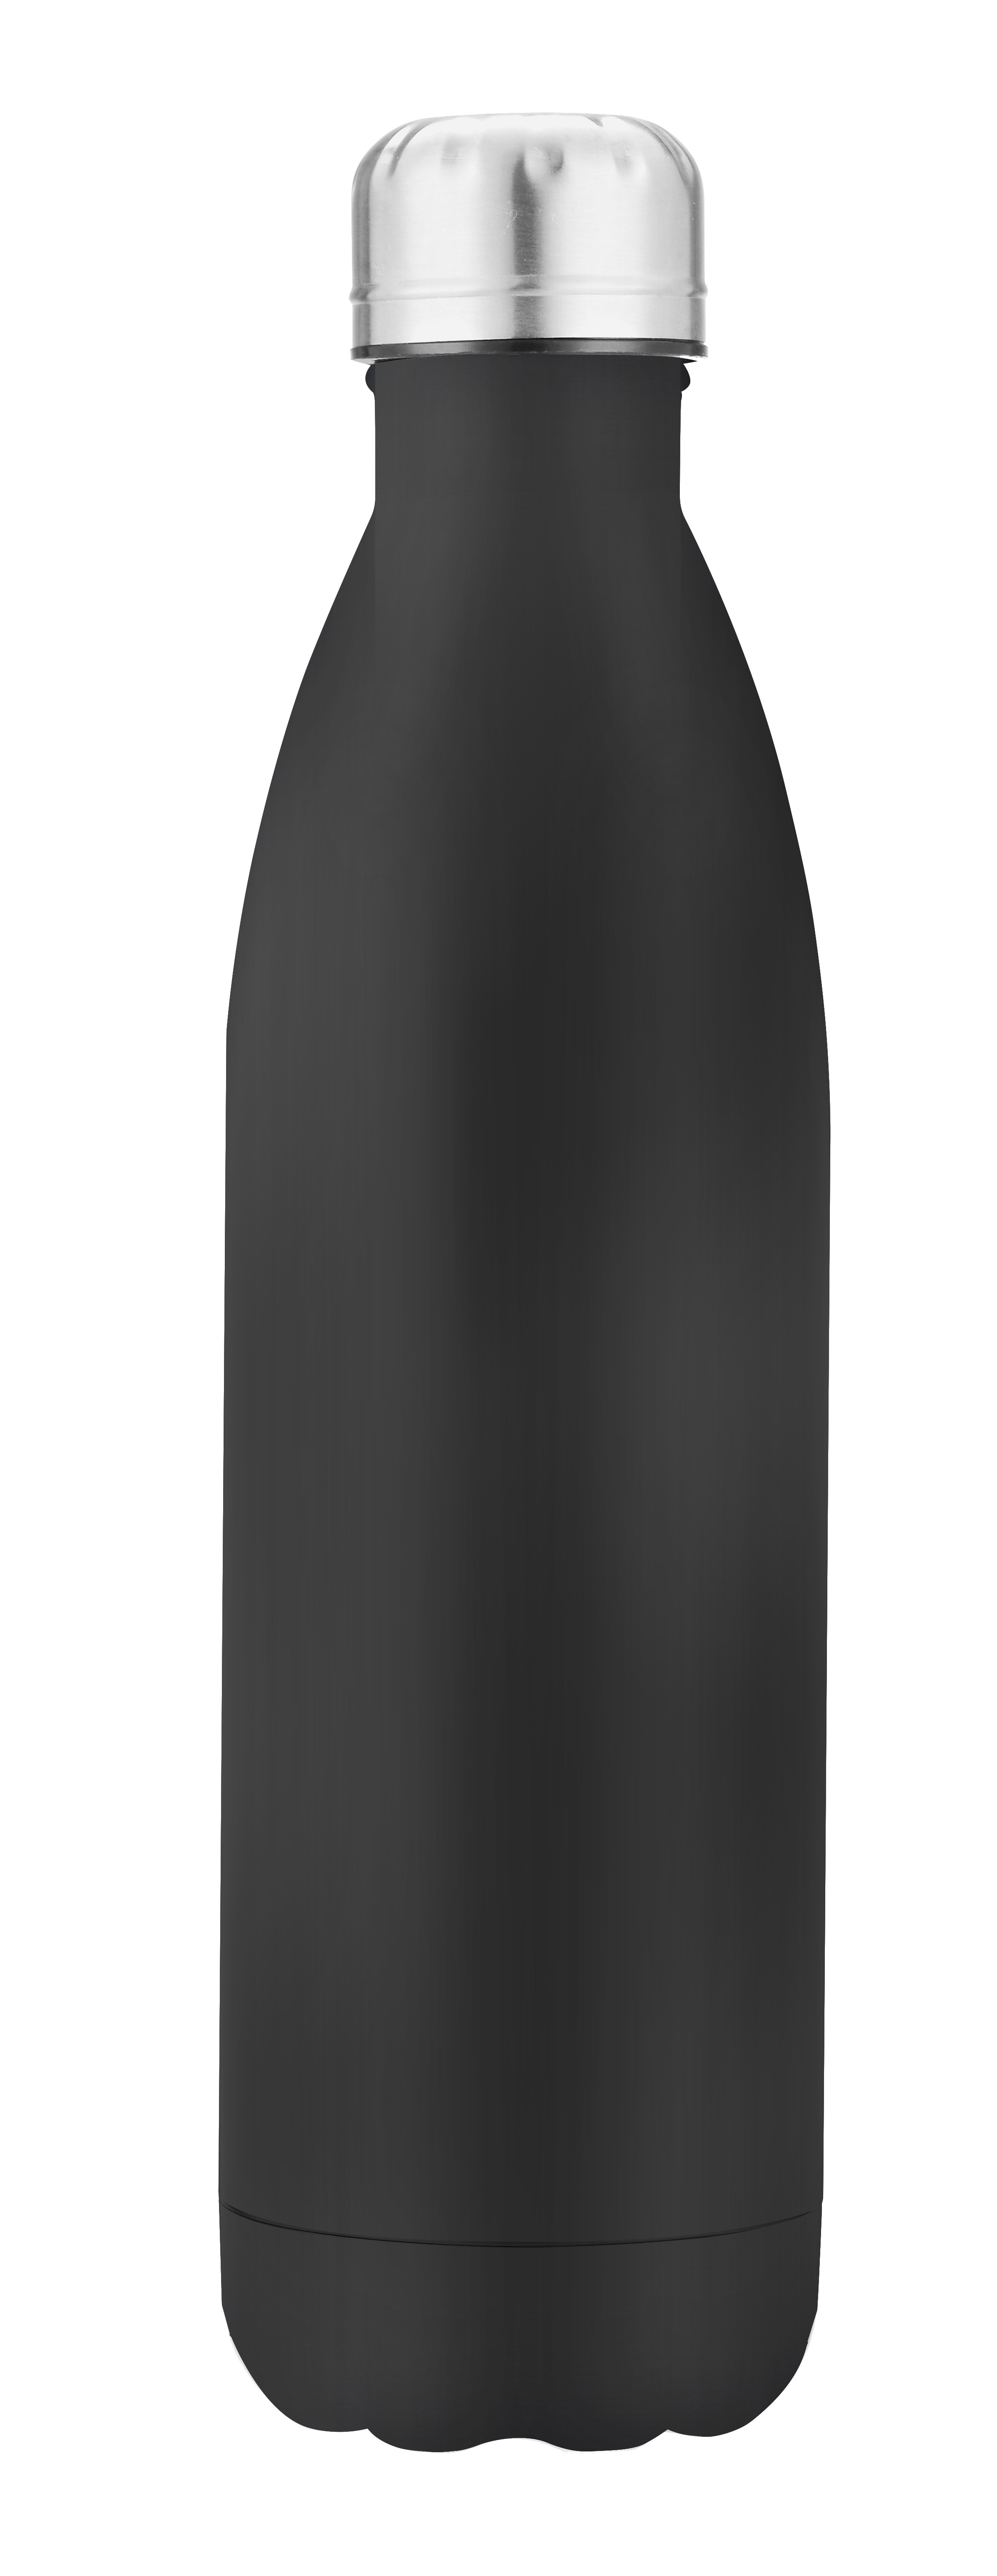 TRIO Edelstahl- Vakuumflasche 500 ml